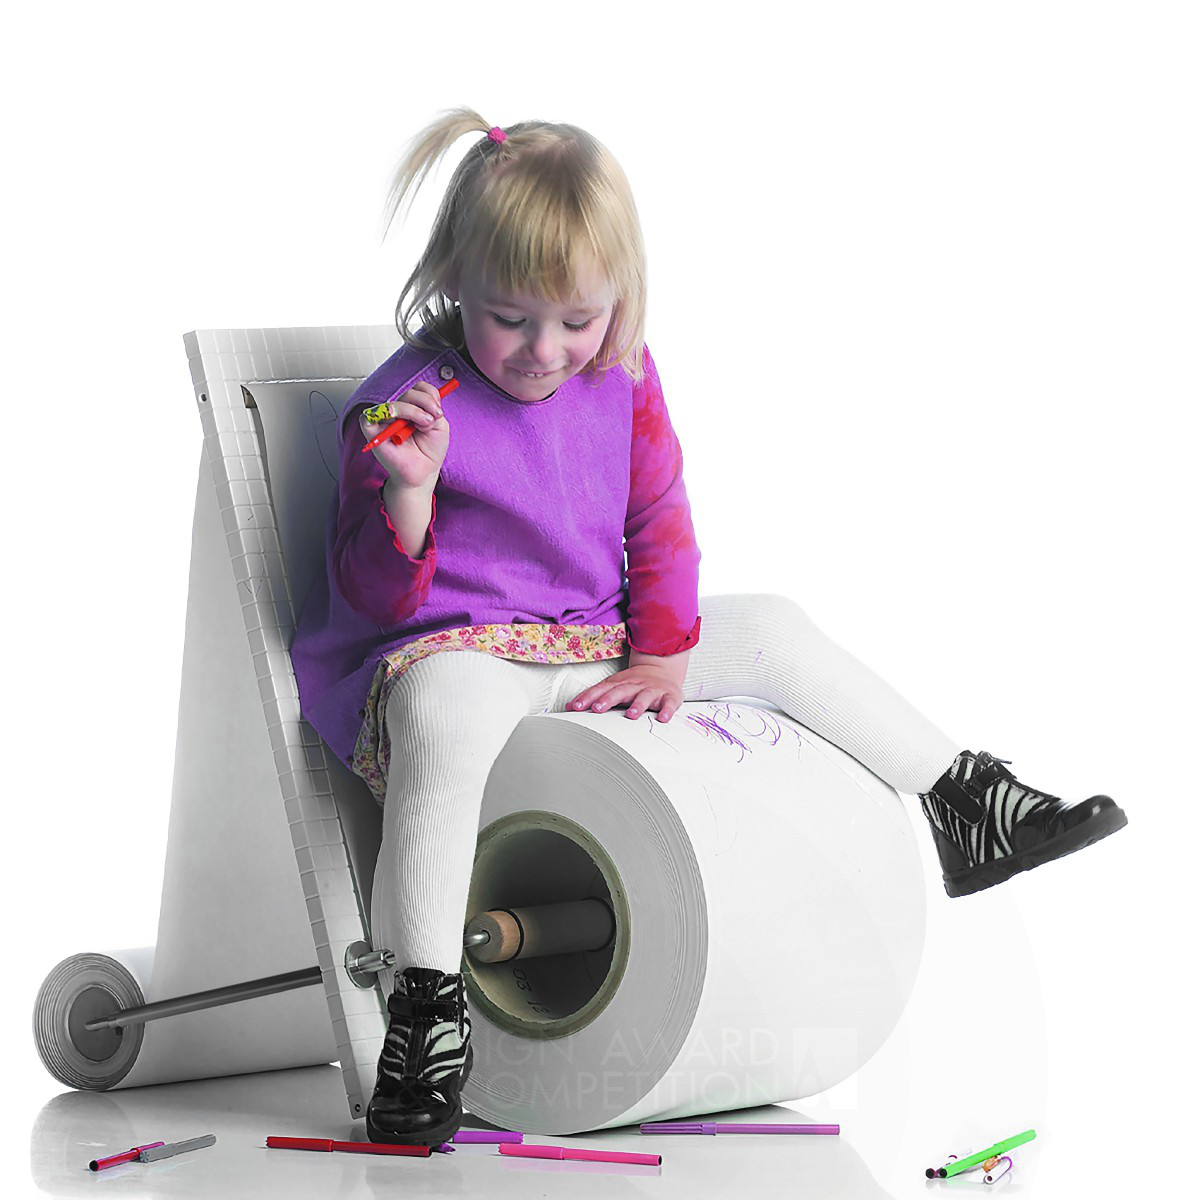 어린이를 위한 창의적인 가구 디자인: "Children Papers Chair"